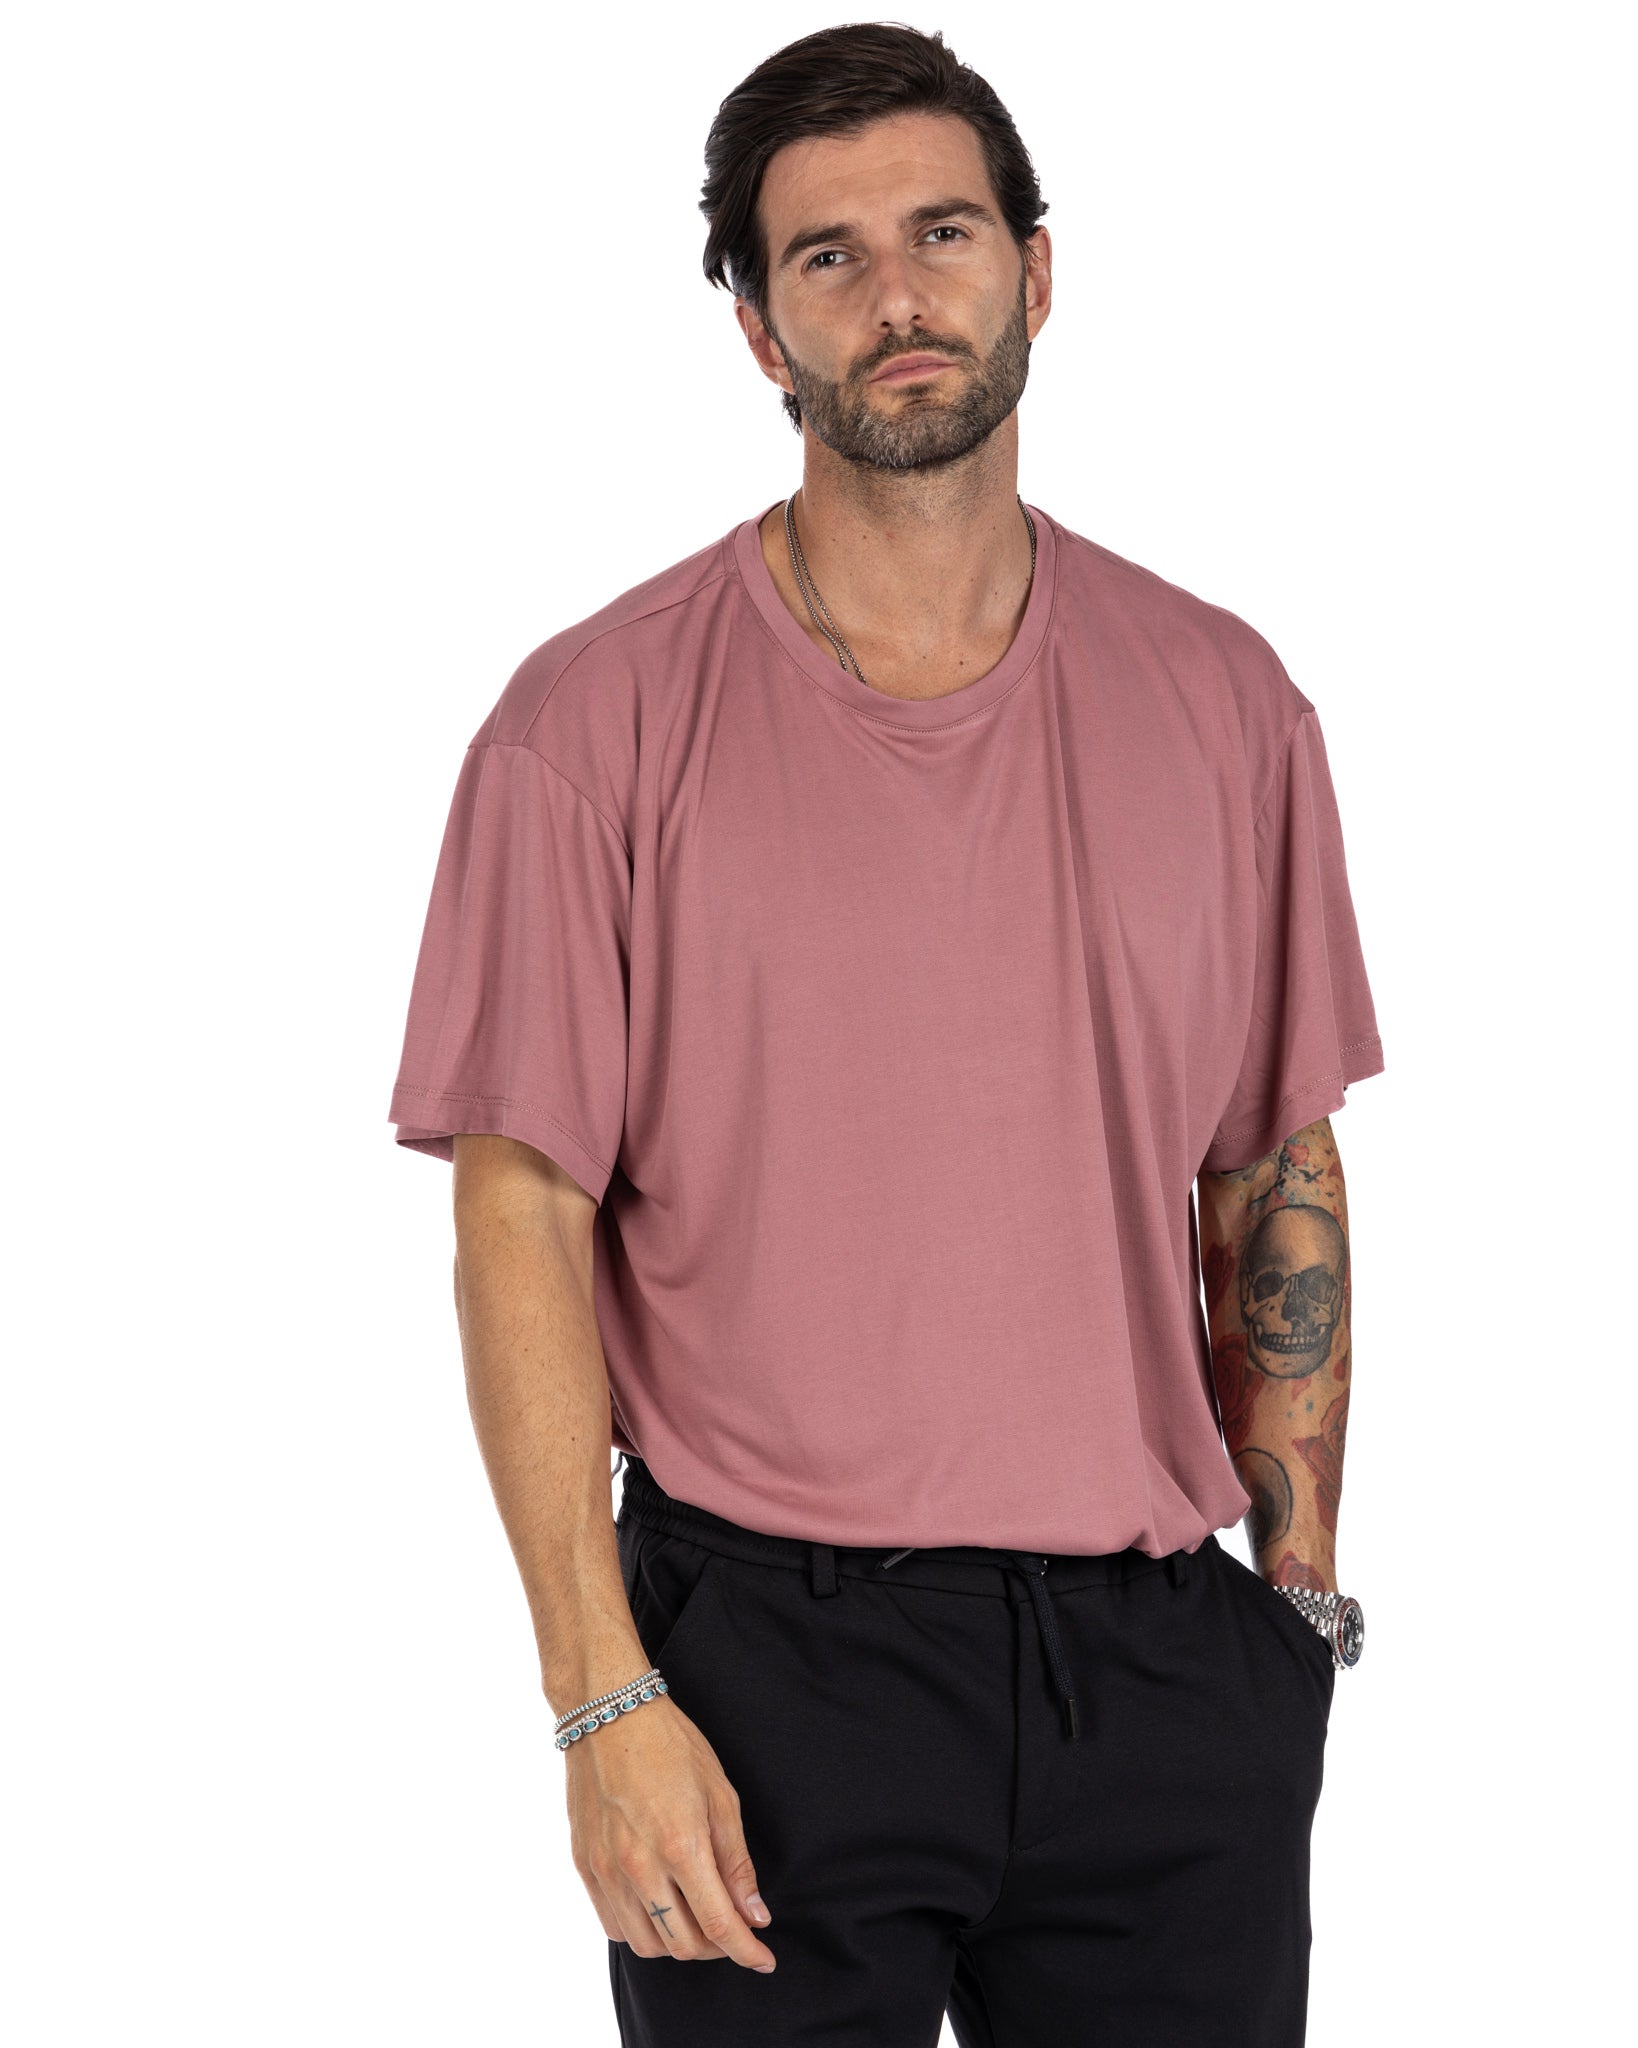 Owen - oversized pink t-shirt